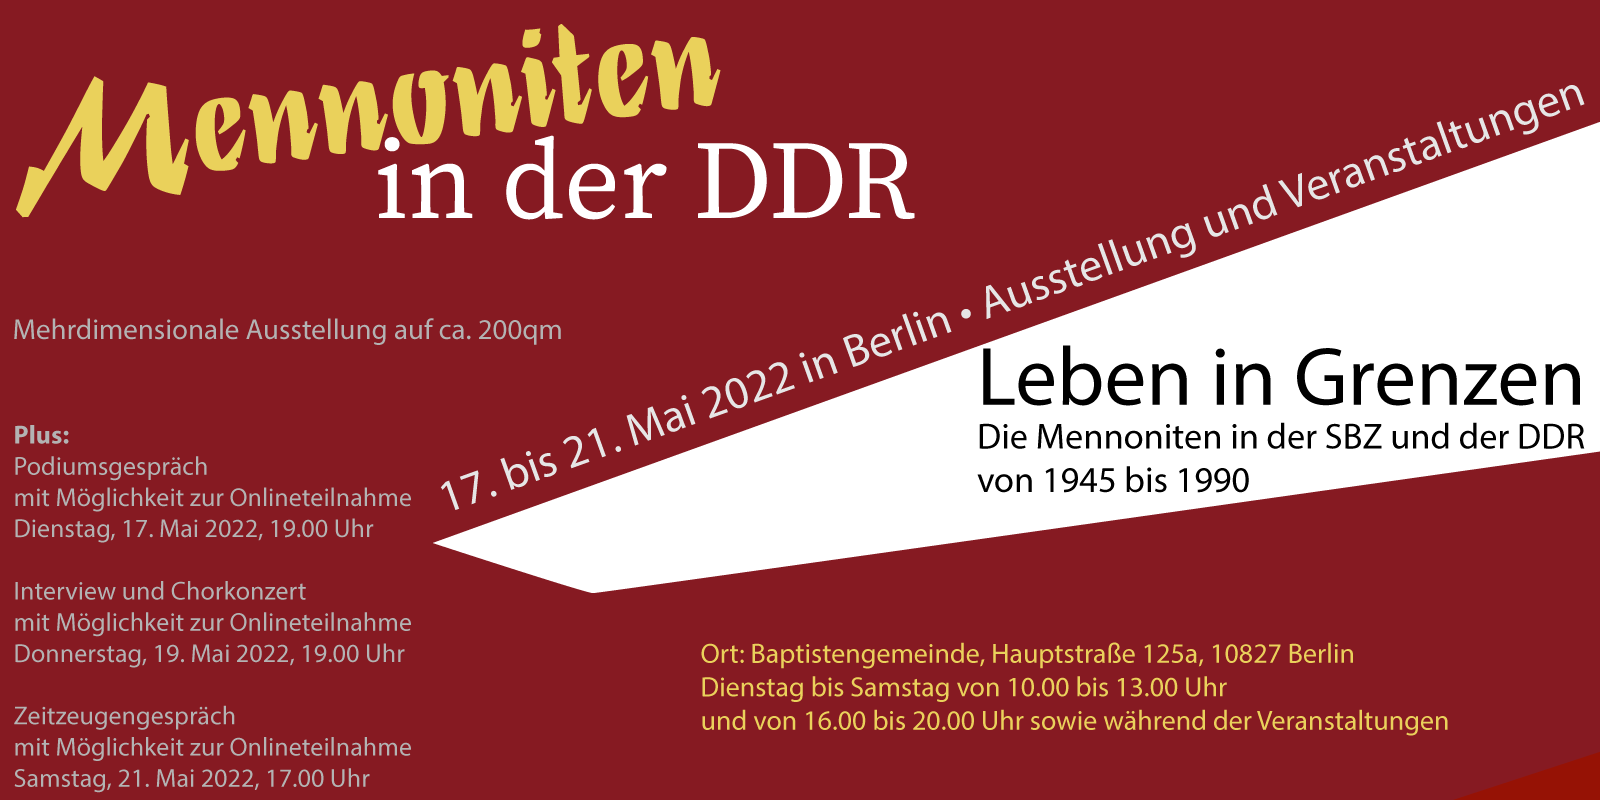 Leben in Grenzen, Mennoniten in der DDR, Ausstellung und Veranstaltungen.